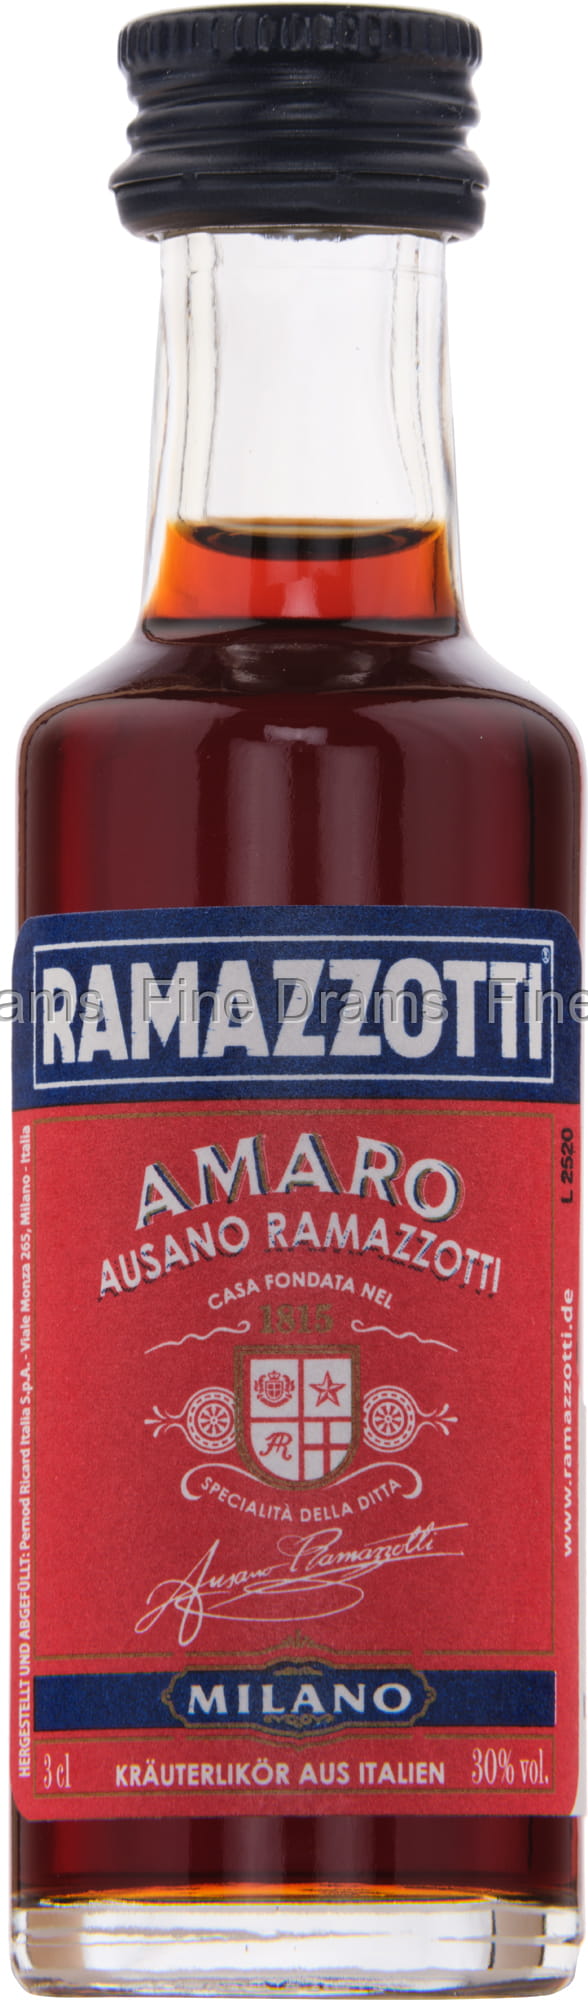 Ramazzotti Amaro Miniature